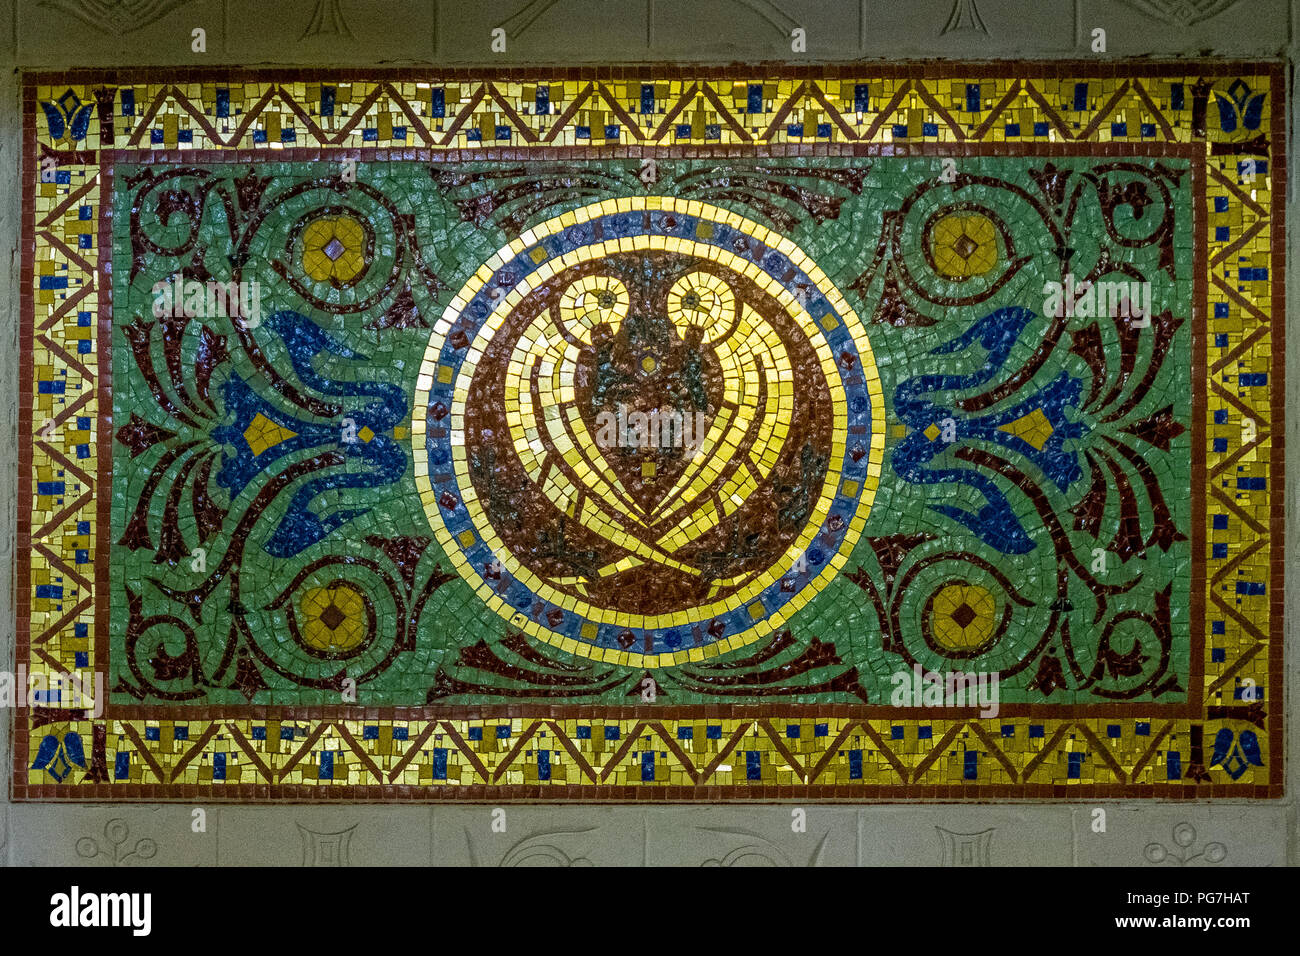 Belle Epoque goldenen Mosaiken als Symbol, palatul Cantacuzino, Busteni, Rumänien. Stockfoto